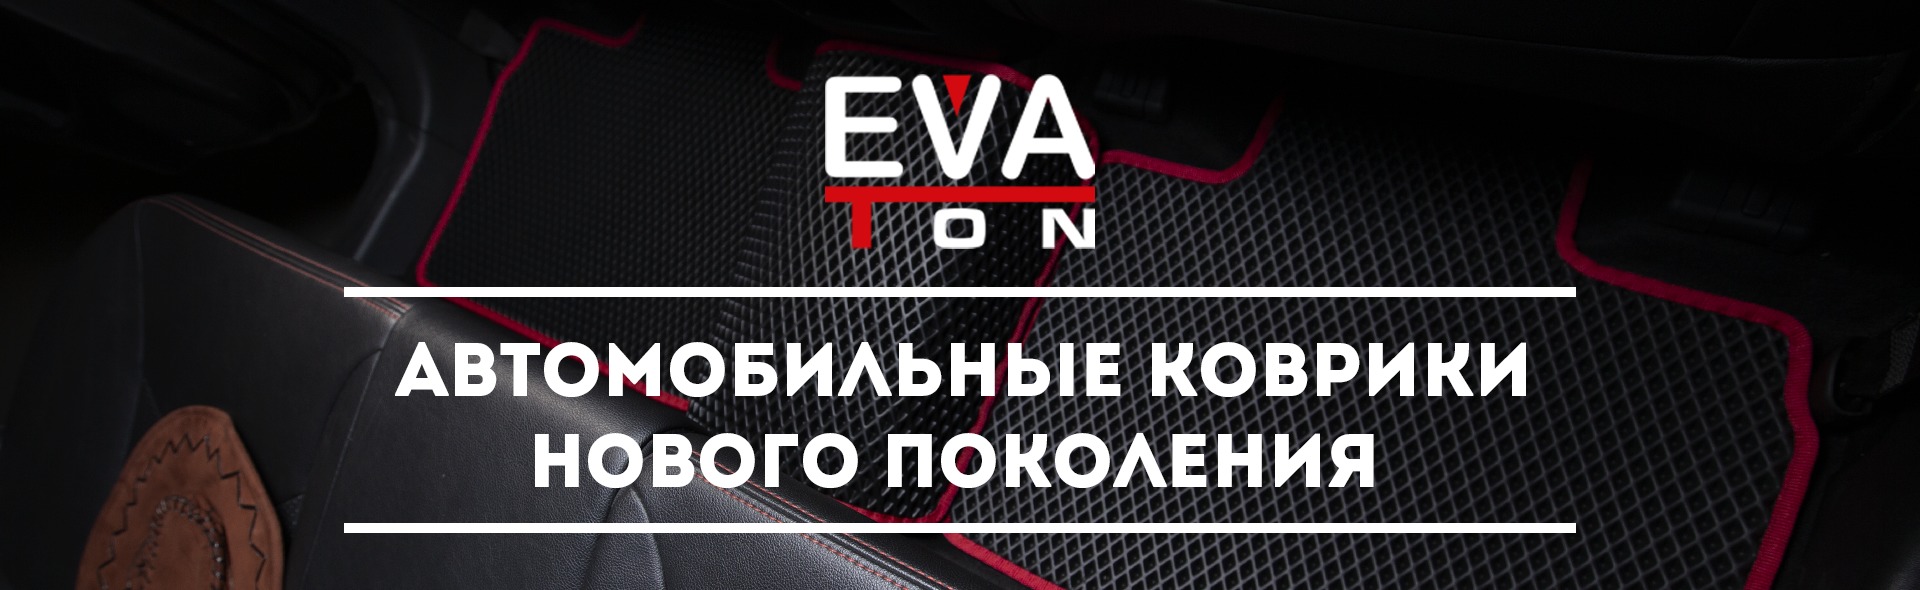 Автоковрики EVA Ton - автомобильные коврики нового поколения